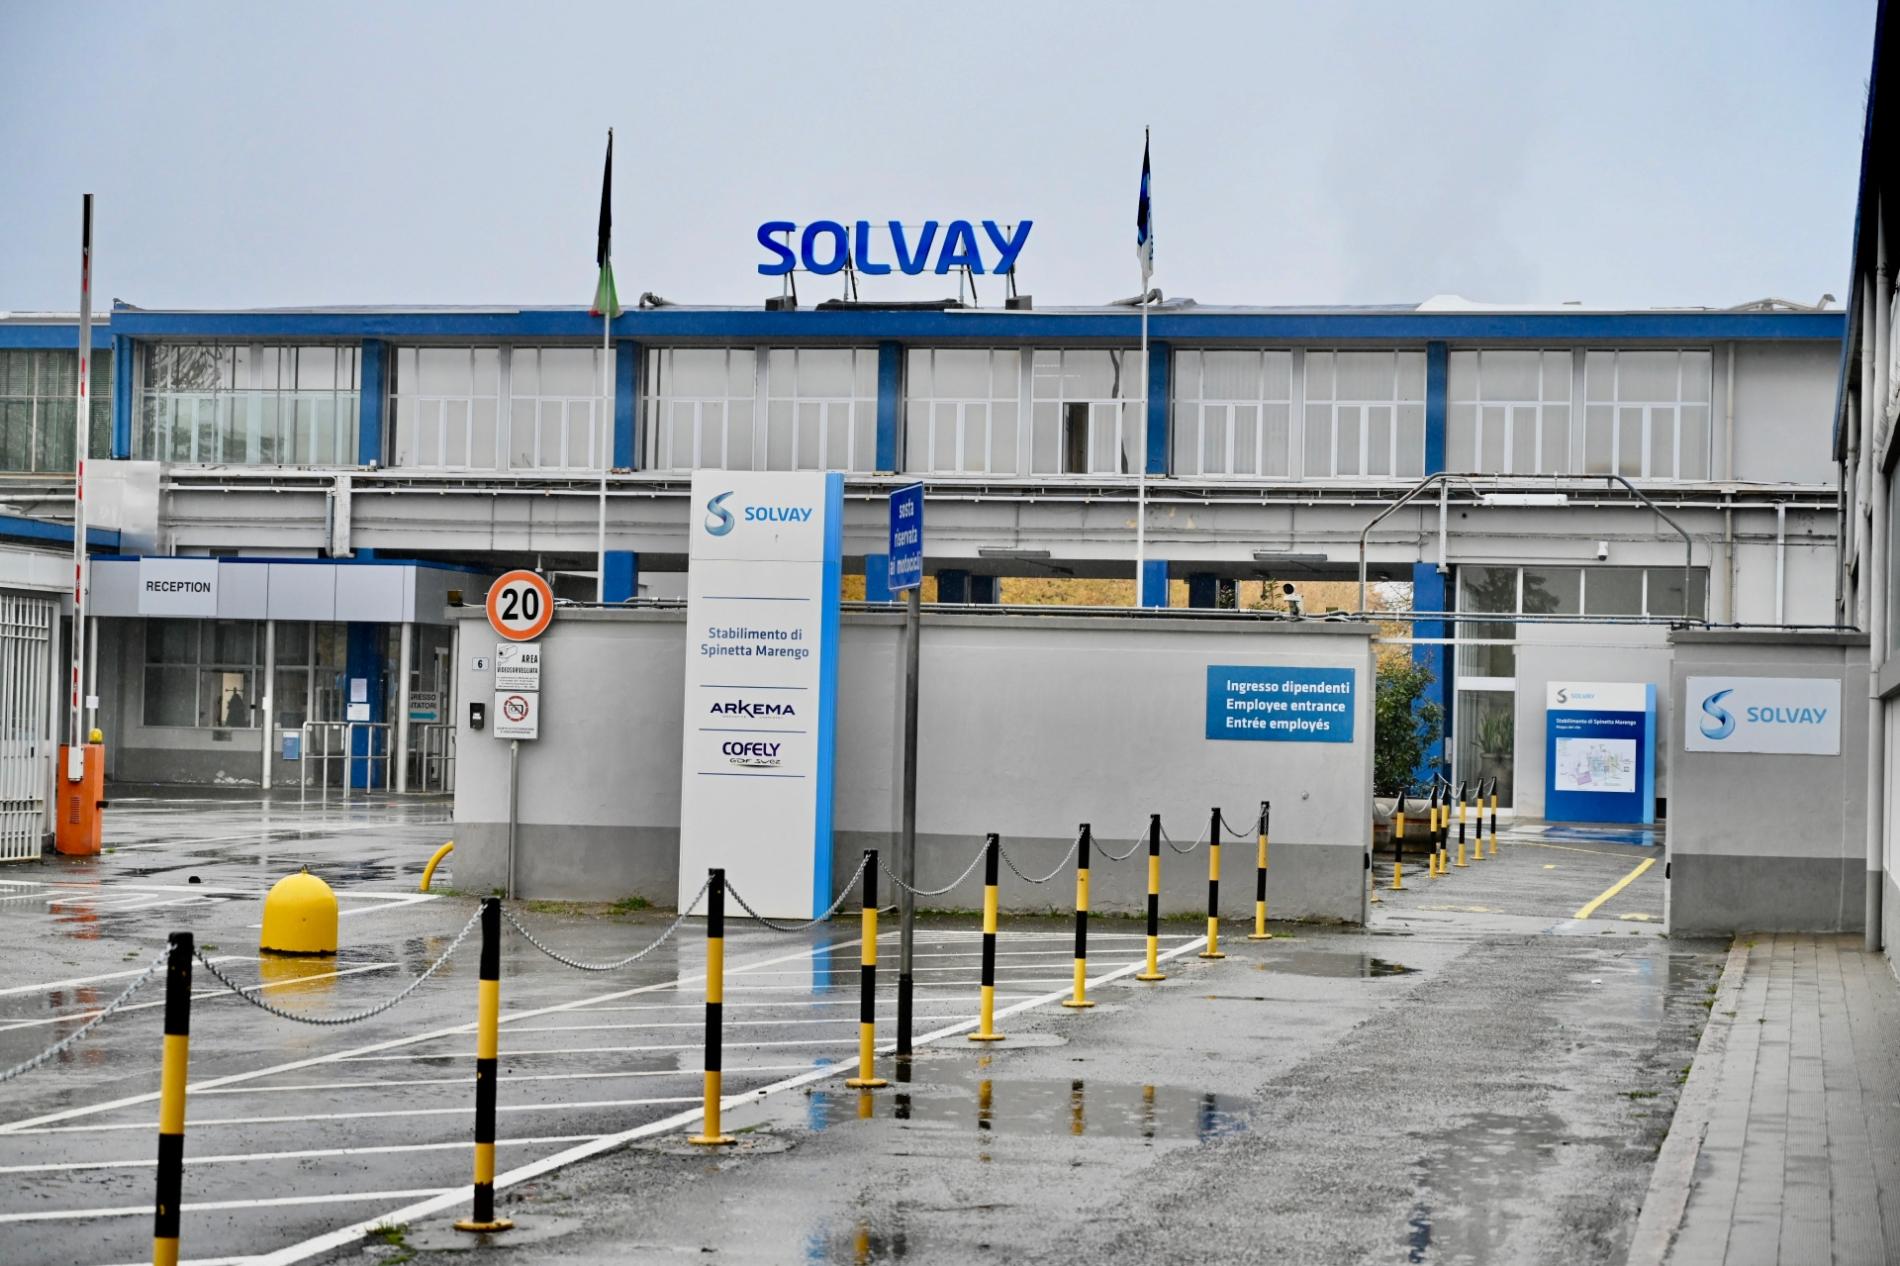 Polo chimico: Solvay spiega l’emergenza interna